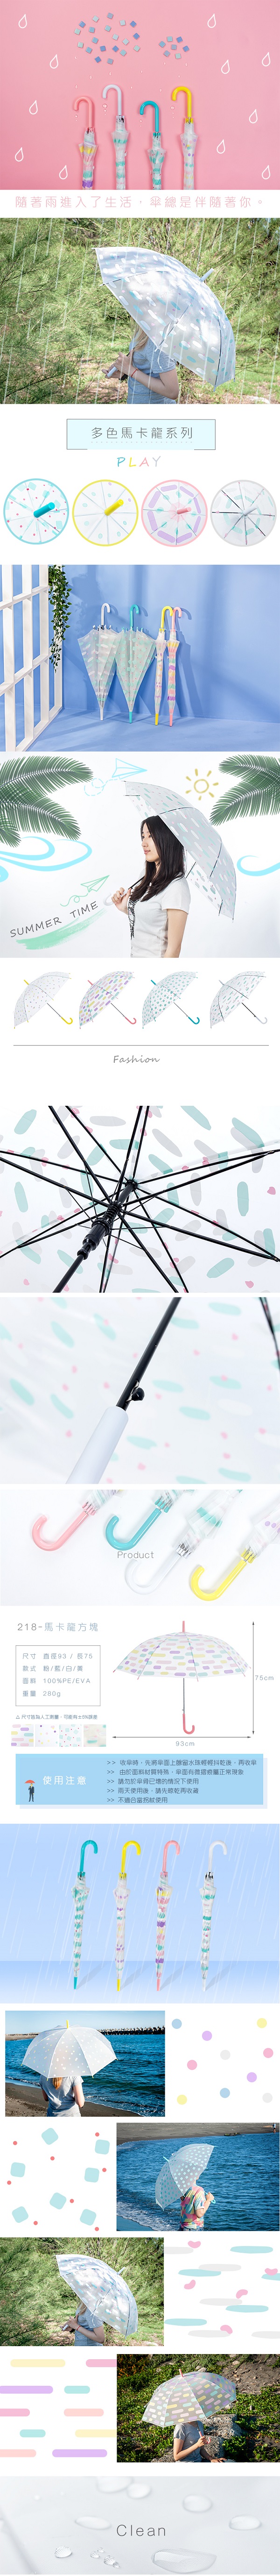 傘、直傘、直立傘、雨傘、自動傘、雨具